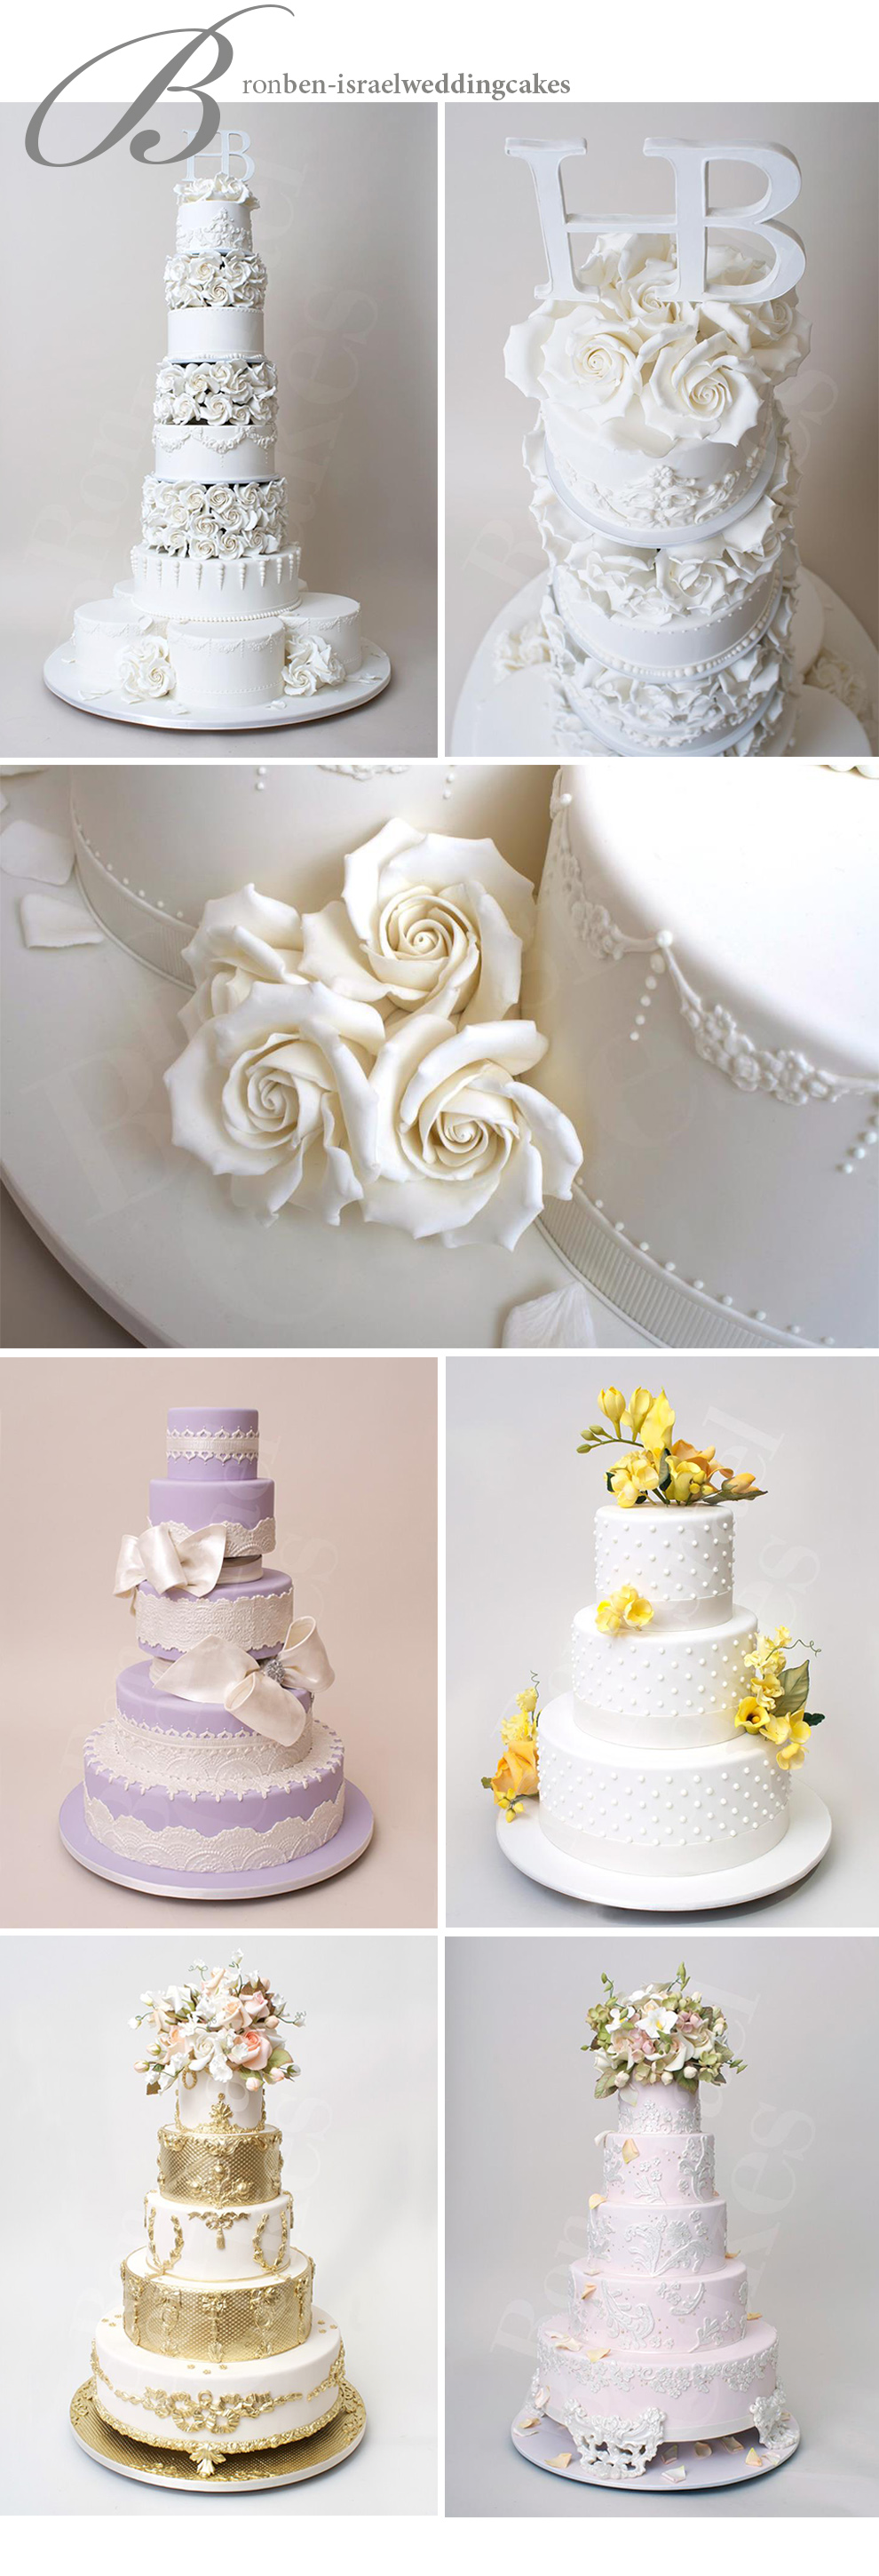 NY Wedding Photography, Monsey Photographer, Wedding, Cake, Kosher Cake, Kosher Wedding Cake